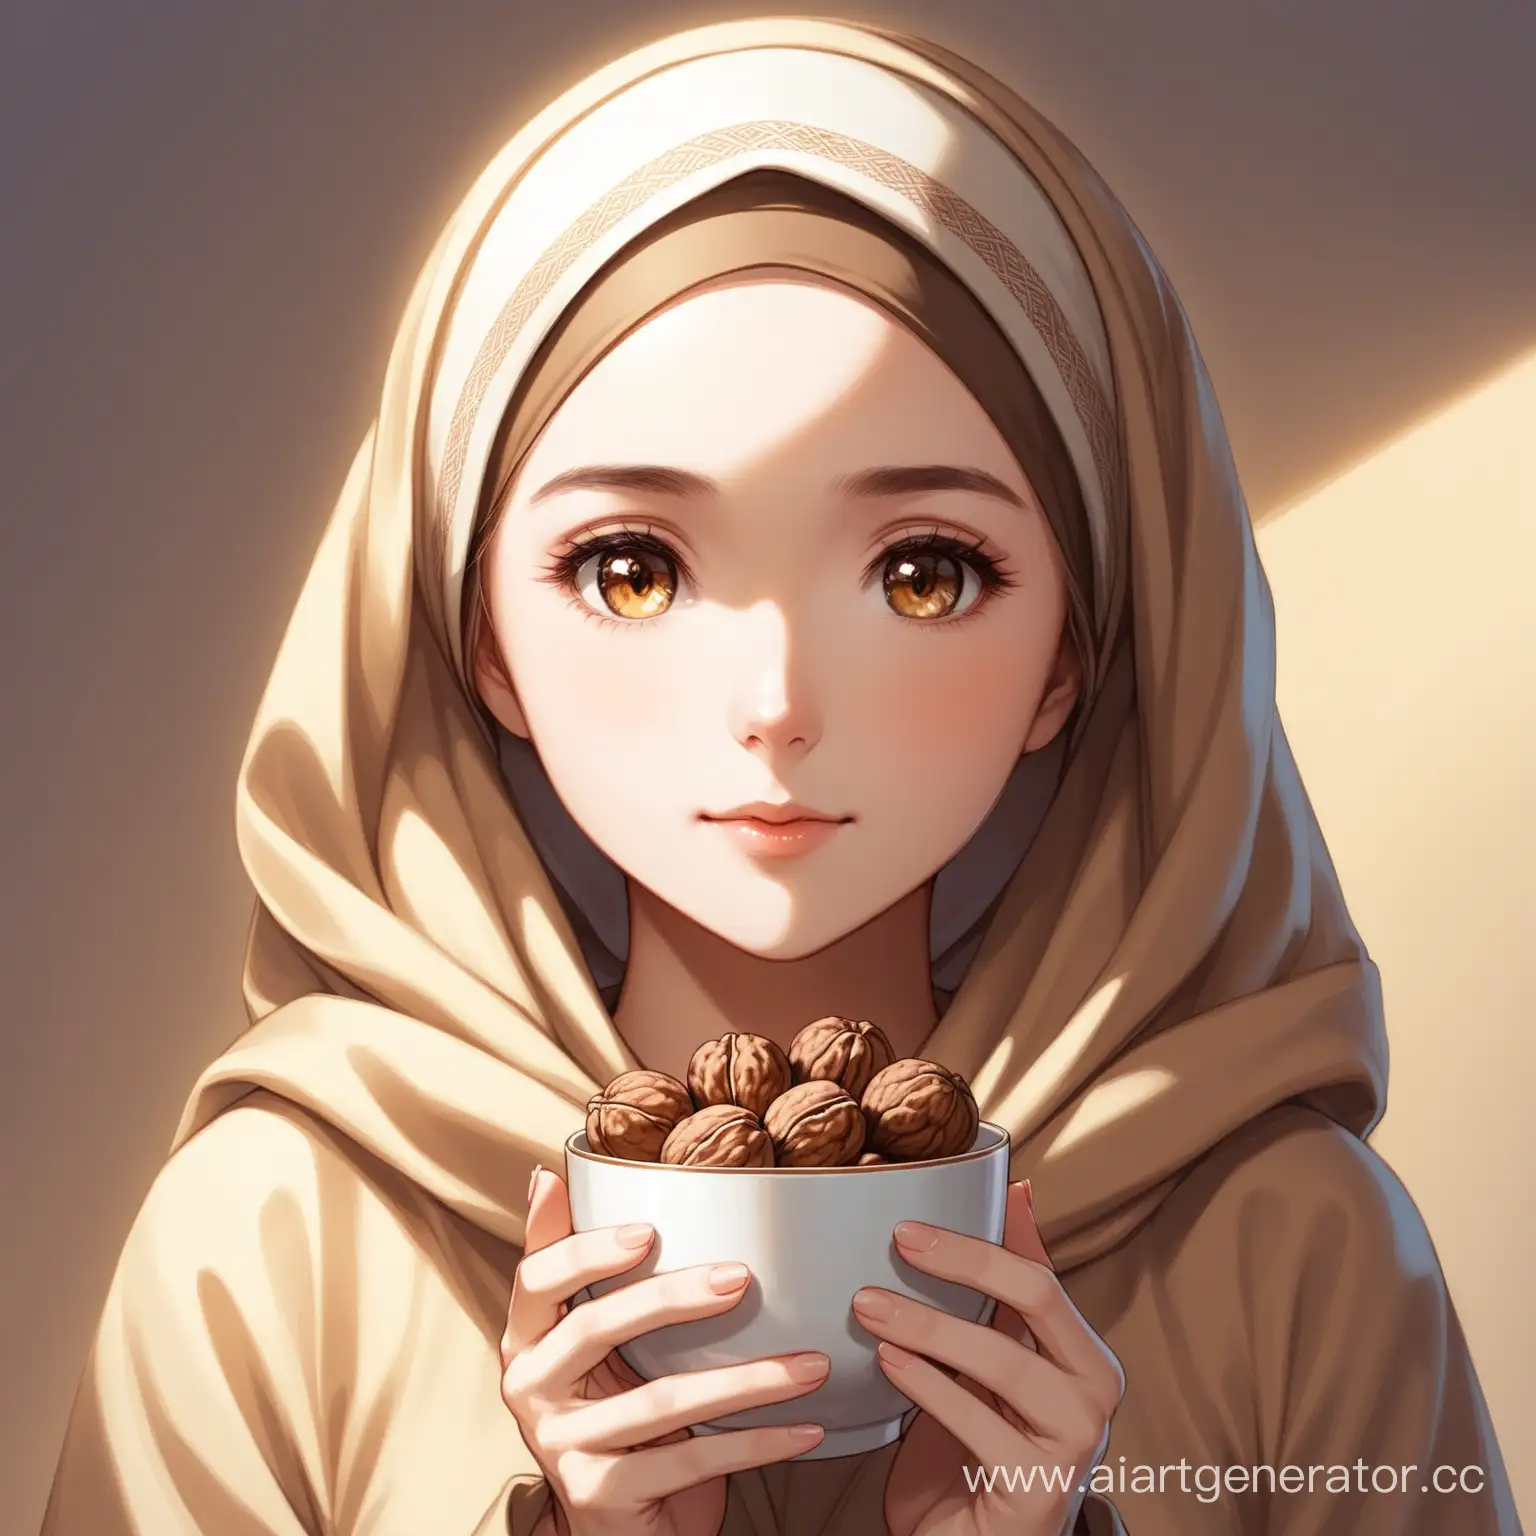 девушка с покрытой платком головой, в светлых оттенках, держит чашку грецких орехов в руках
